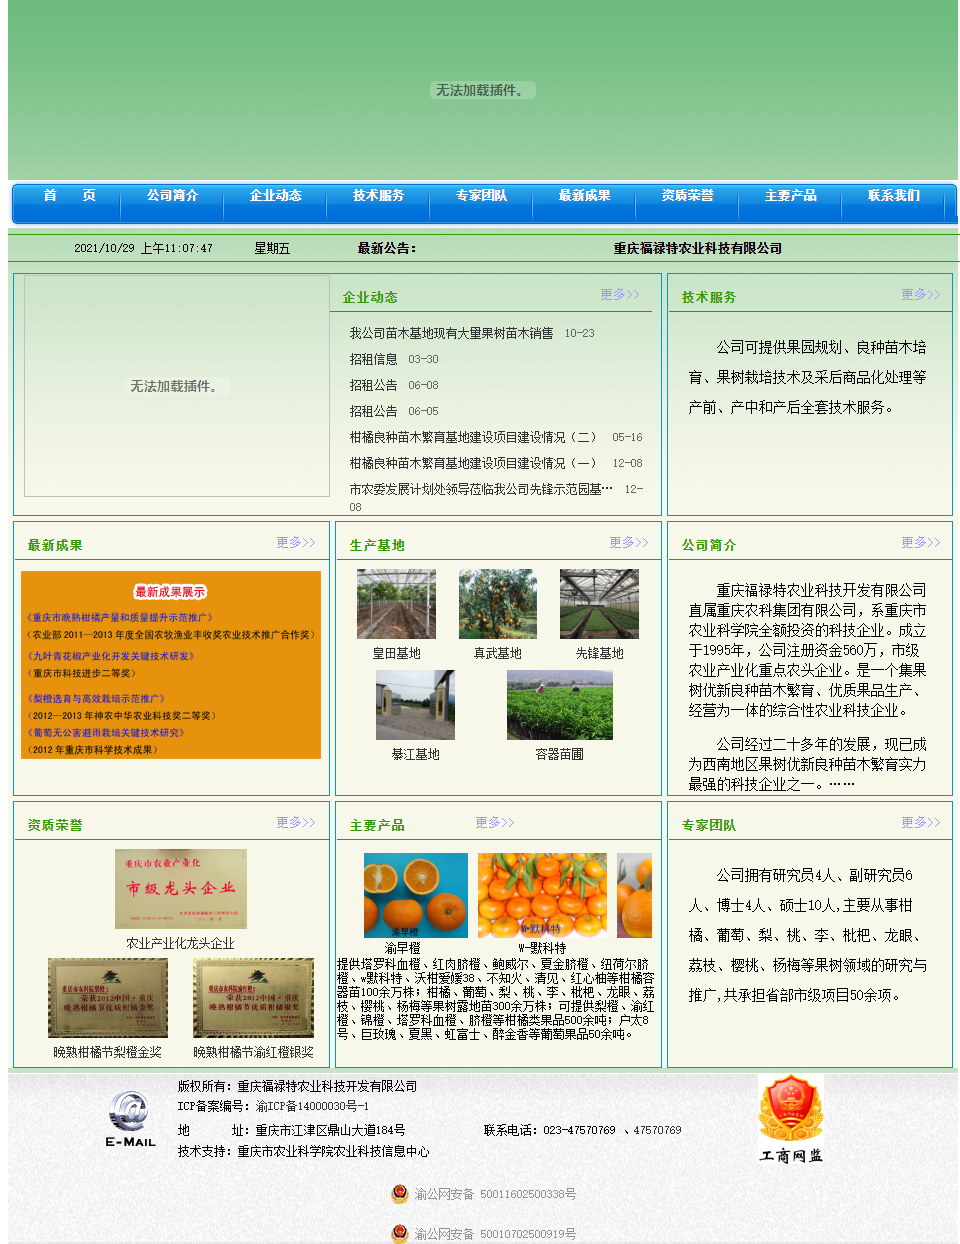 重庆福禄特农业科技开发有限公司网站案例